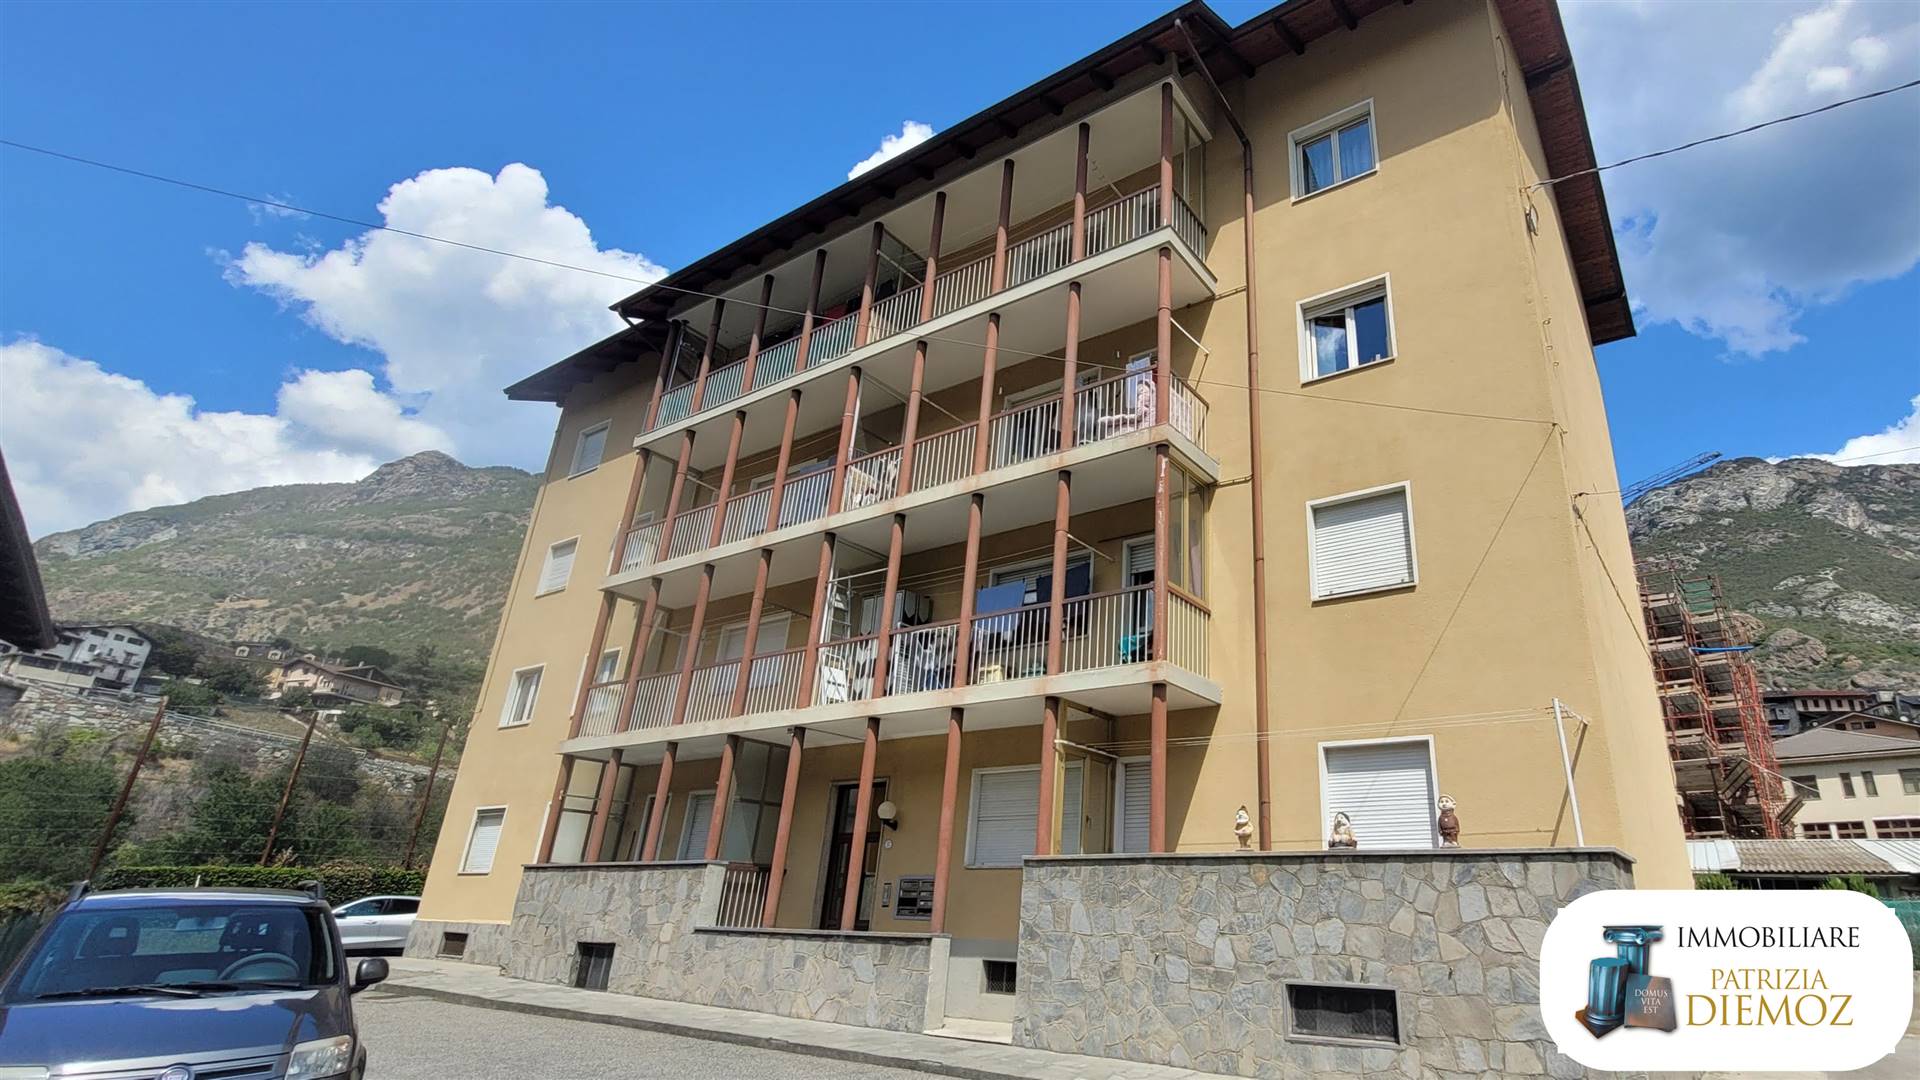 Appartamento in vendita a Chatillon, 5 locali, prezzo € 120.000 | PortaleAgenzieImmobiliari.it